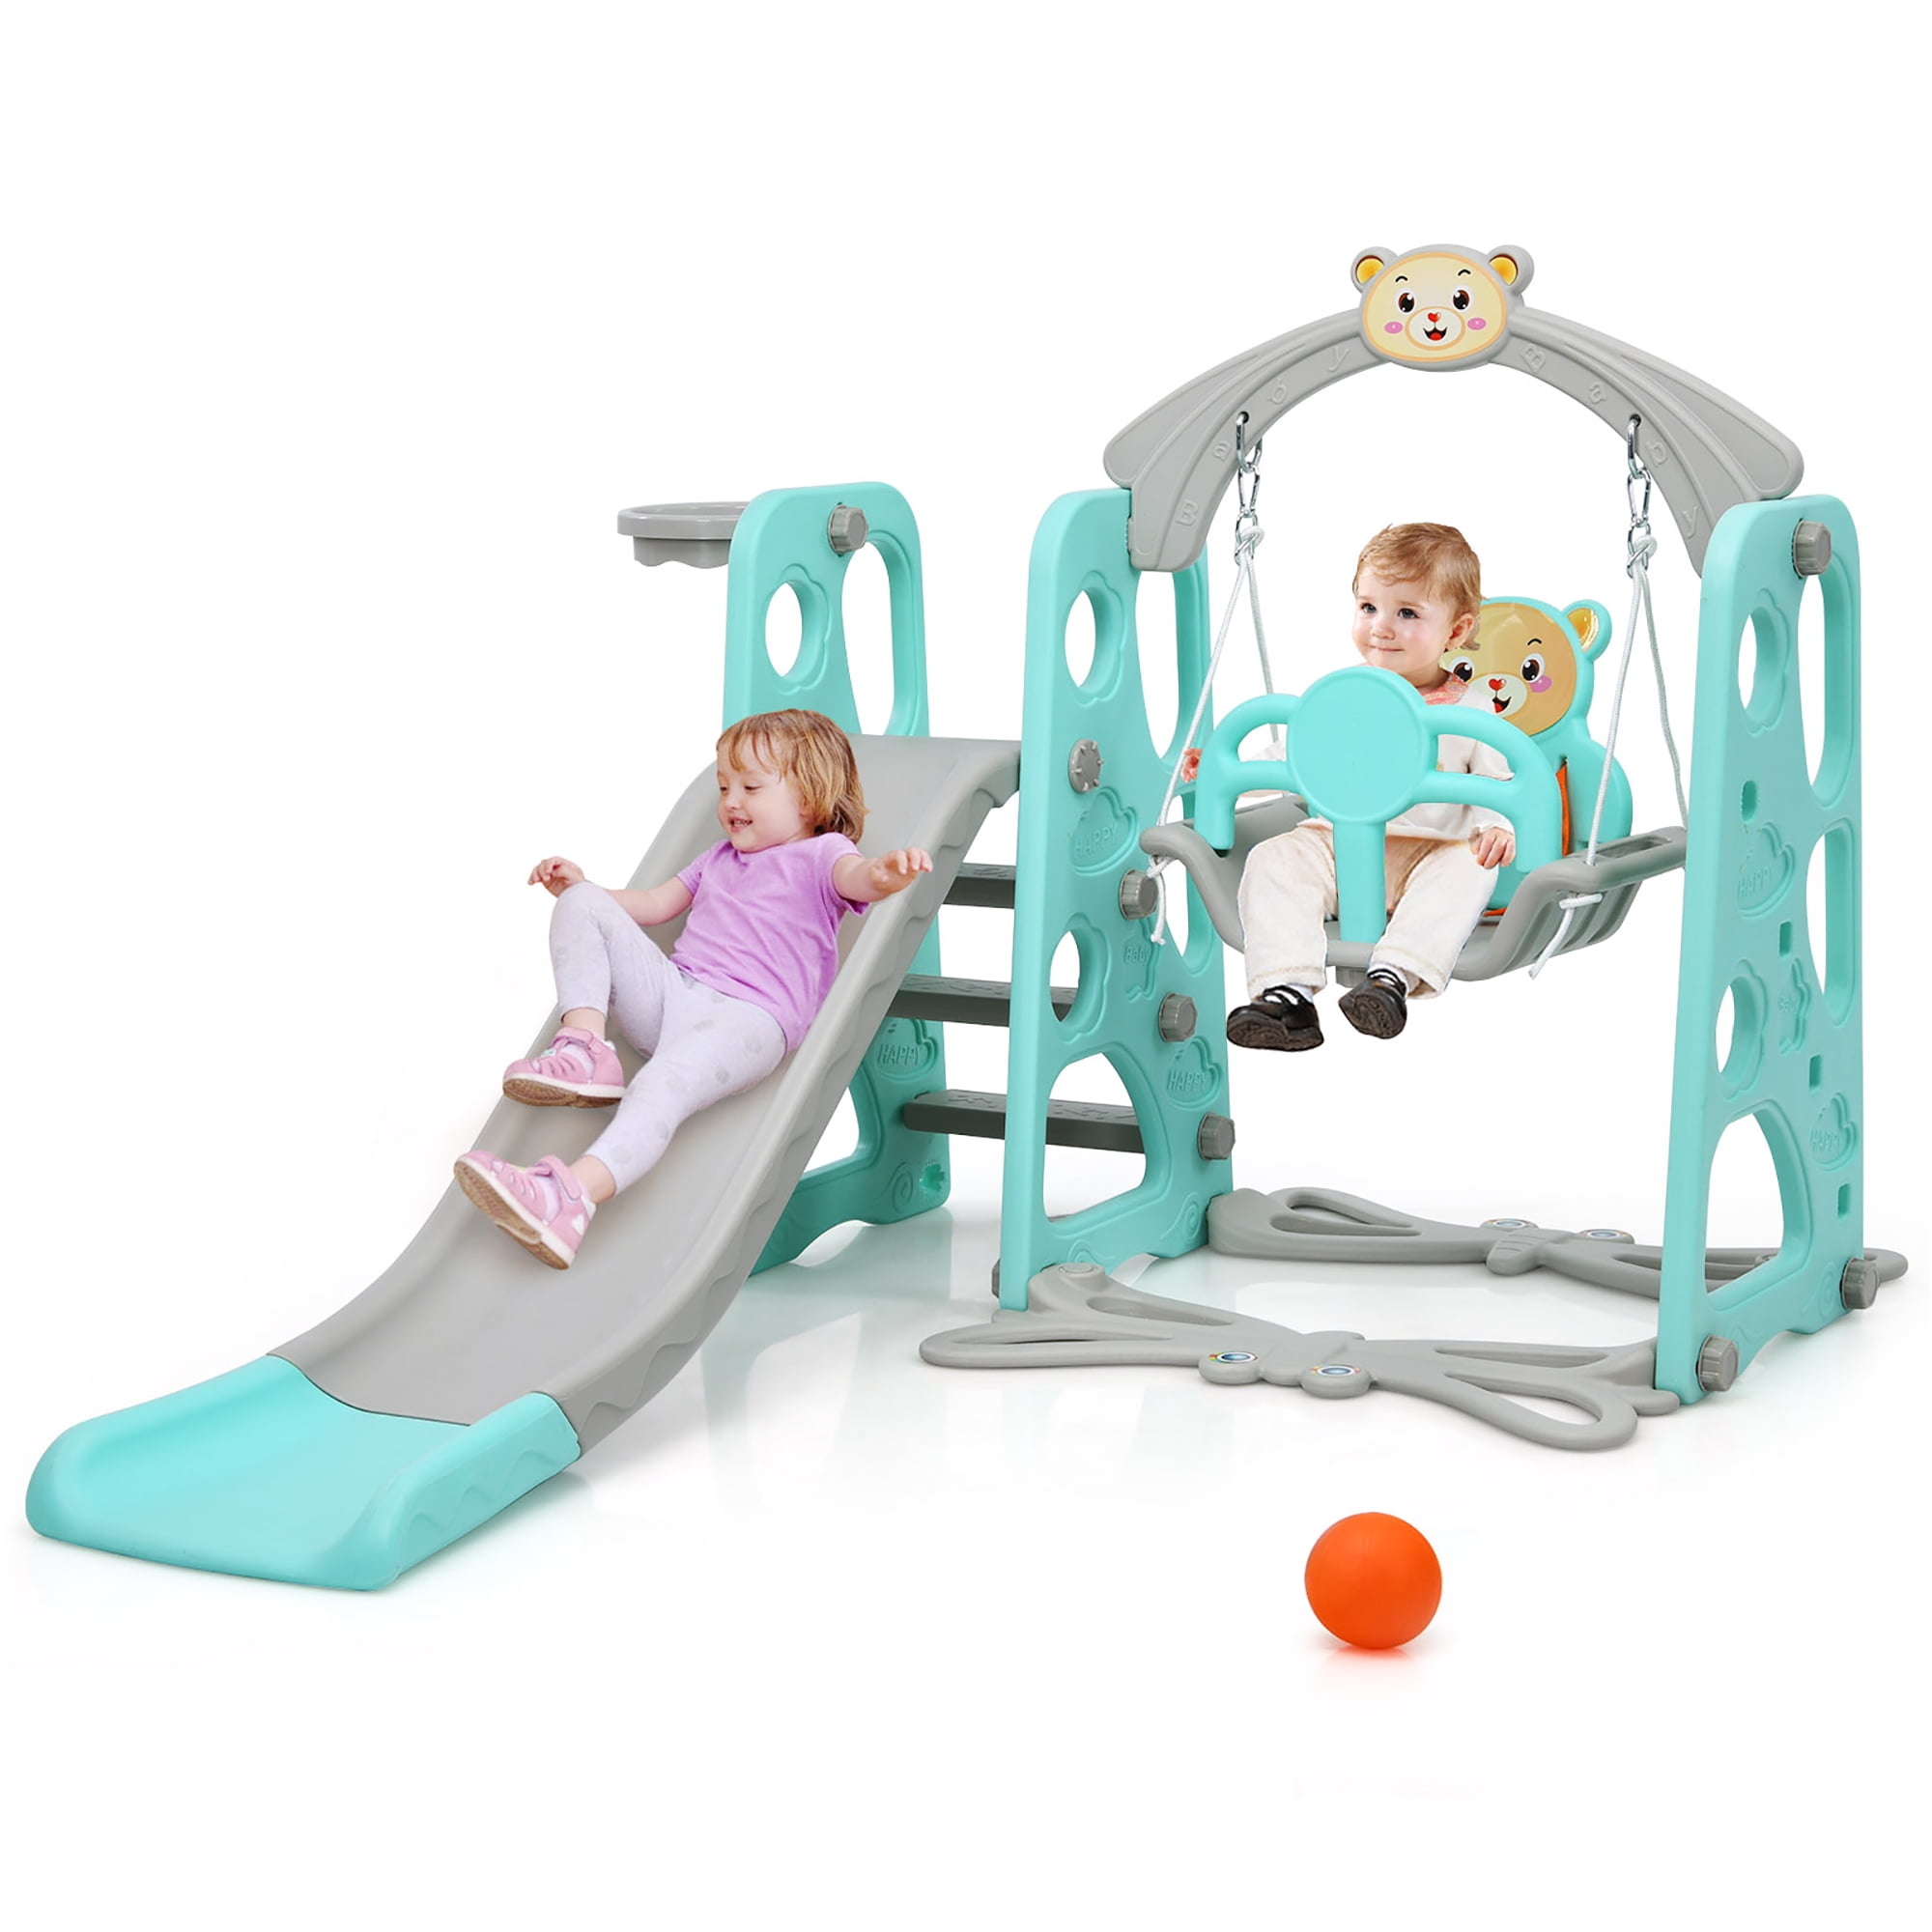 6-in-1 Toddler Play Set Indoor Outdoor Climbing Swing Slide w/ Ball Hoop Gate 